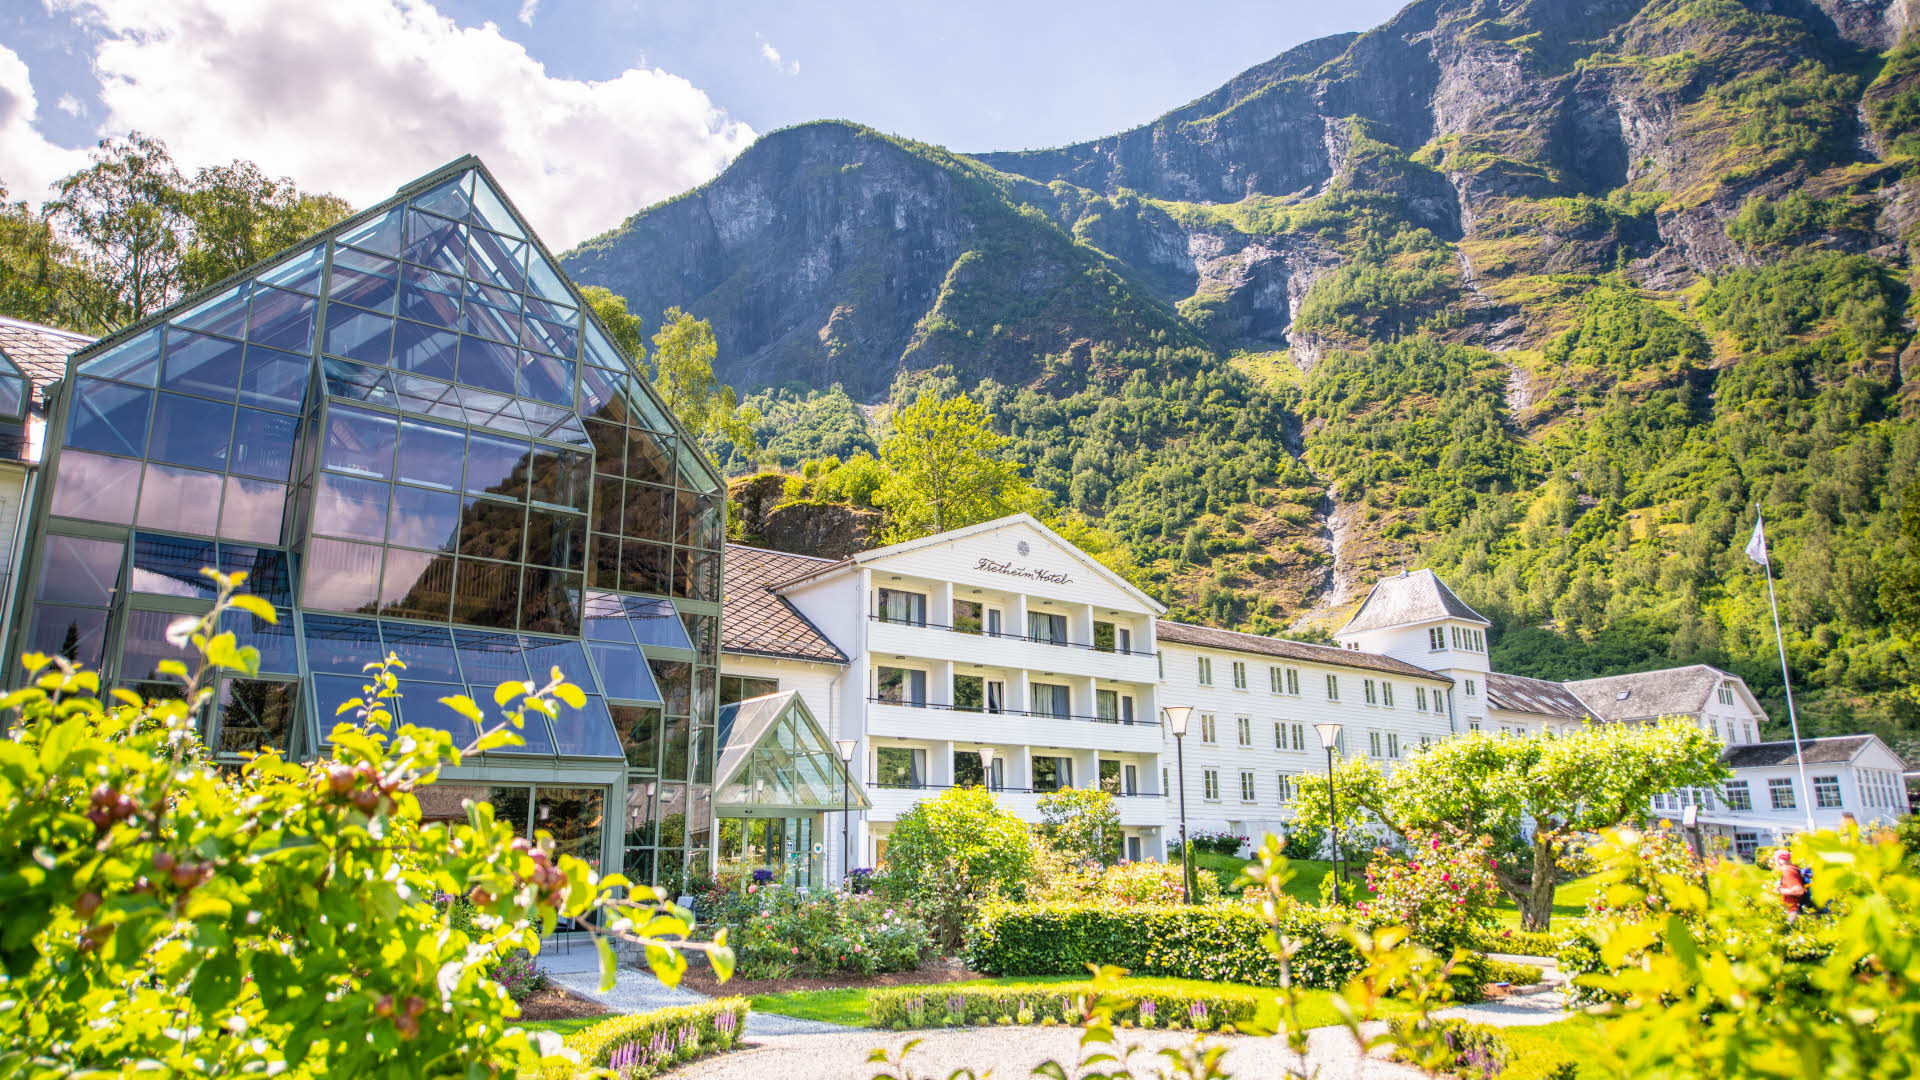 El Hotel Fretheim frente a unas montañas escarpadas vistas desde el jardín en primer plano.